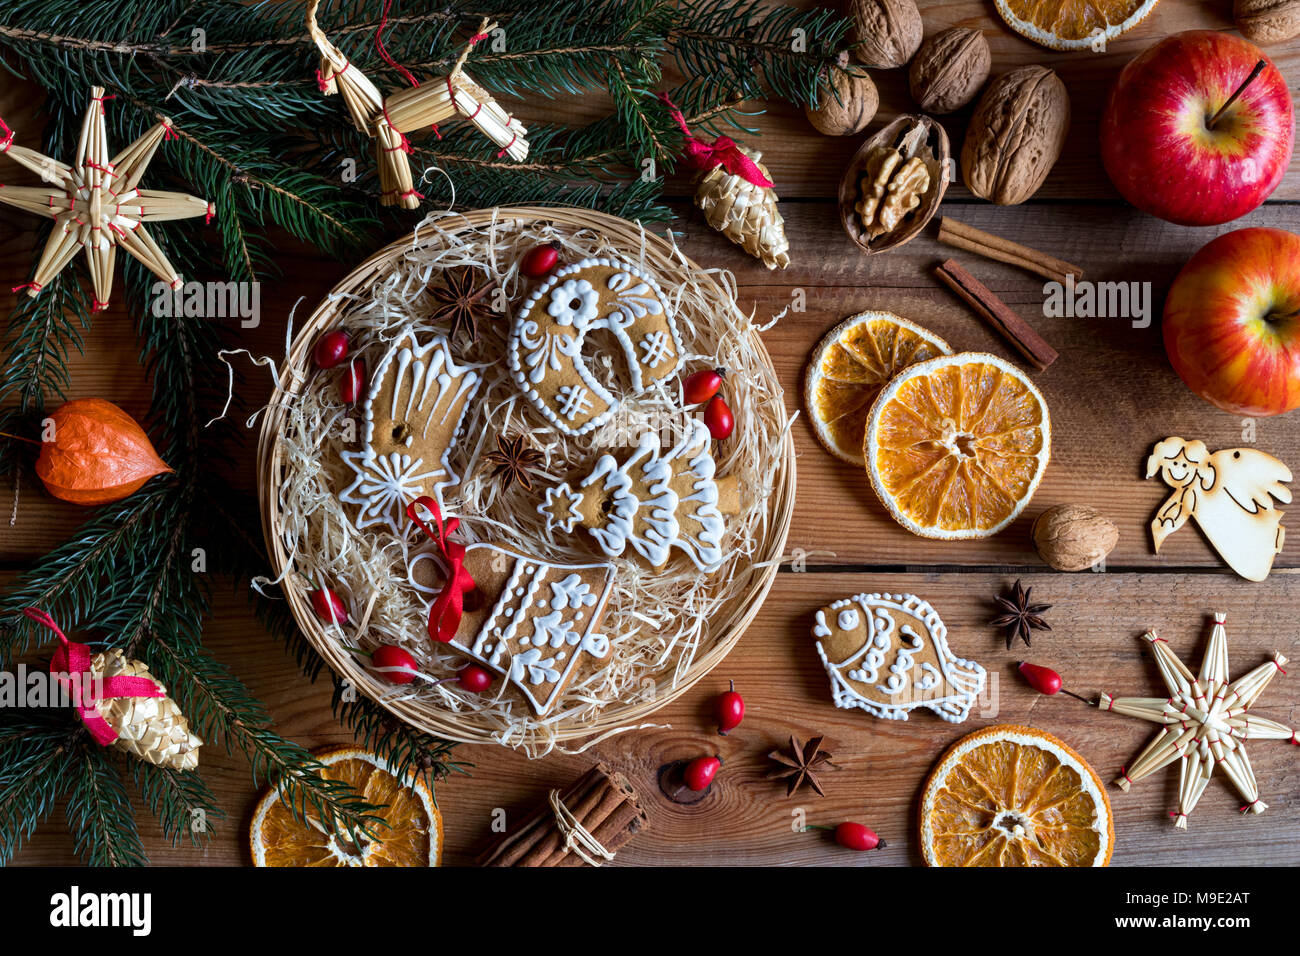 Natale decorati gingerbread cookie in un round cesto in vimini, con rami di abete rosso, ornamenti di paglia, mele, noci, cannella, anice stellato, rose h Foto Stock